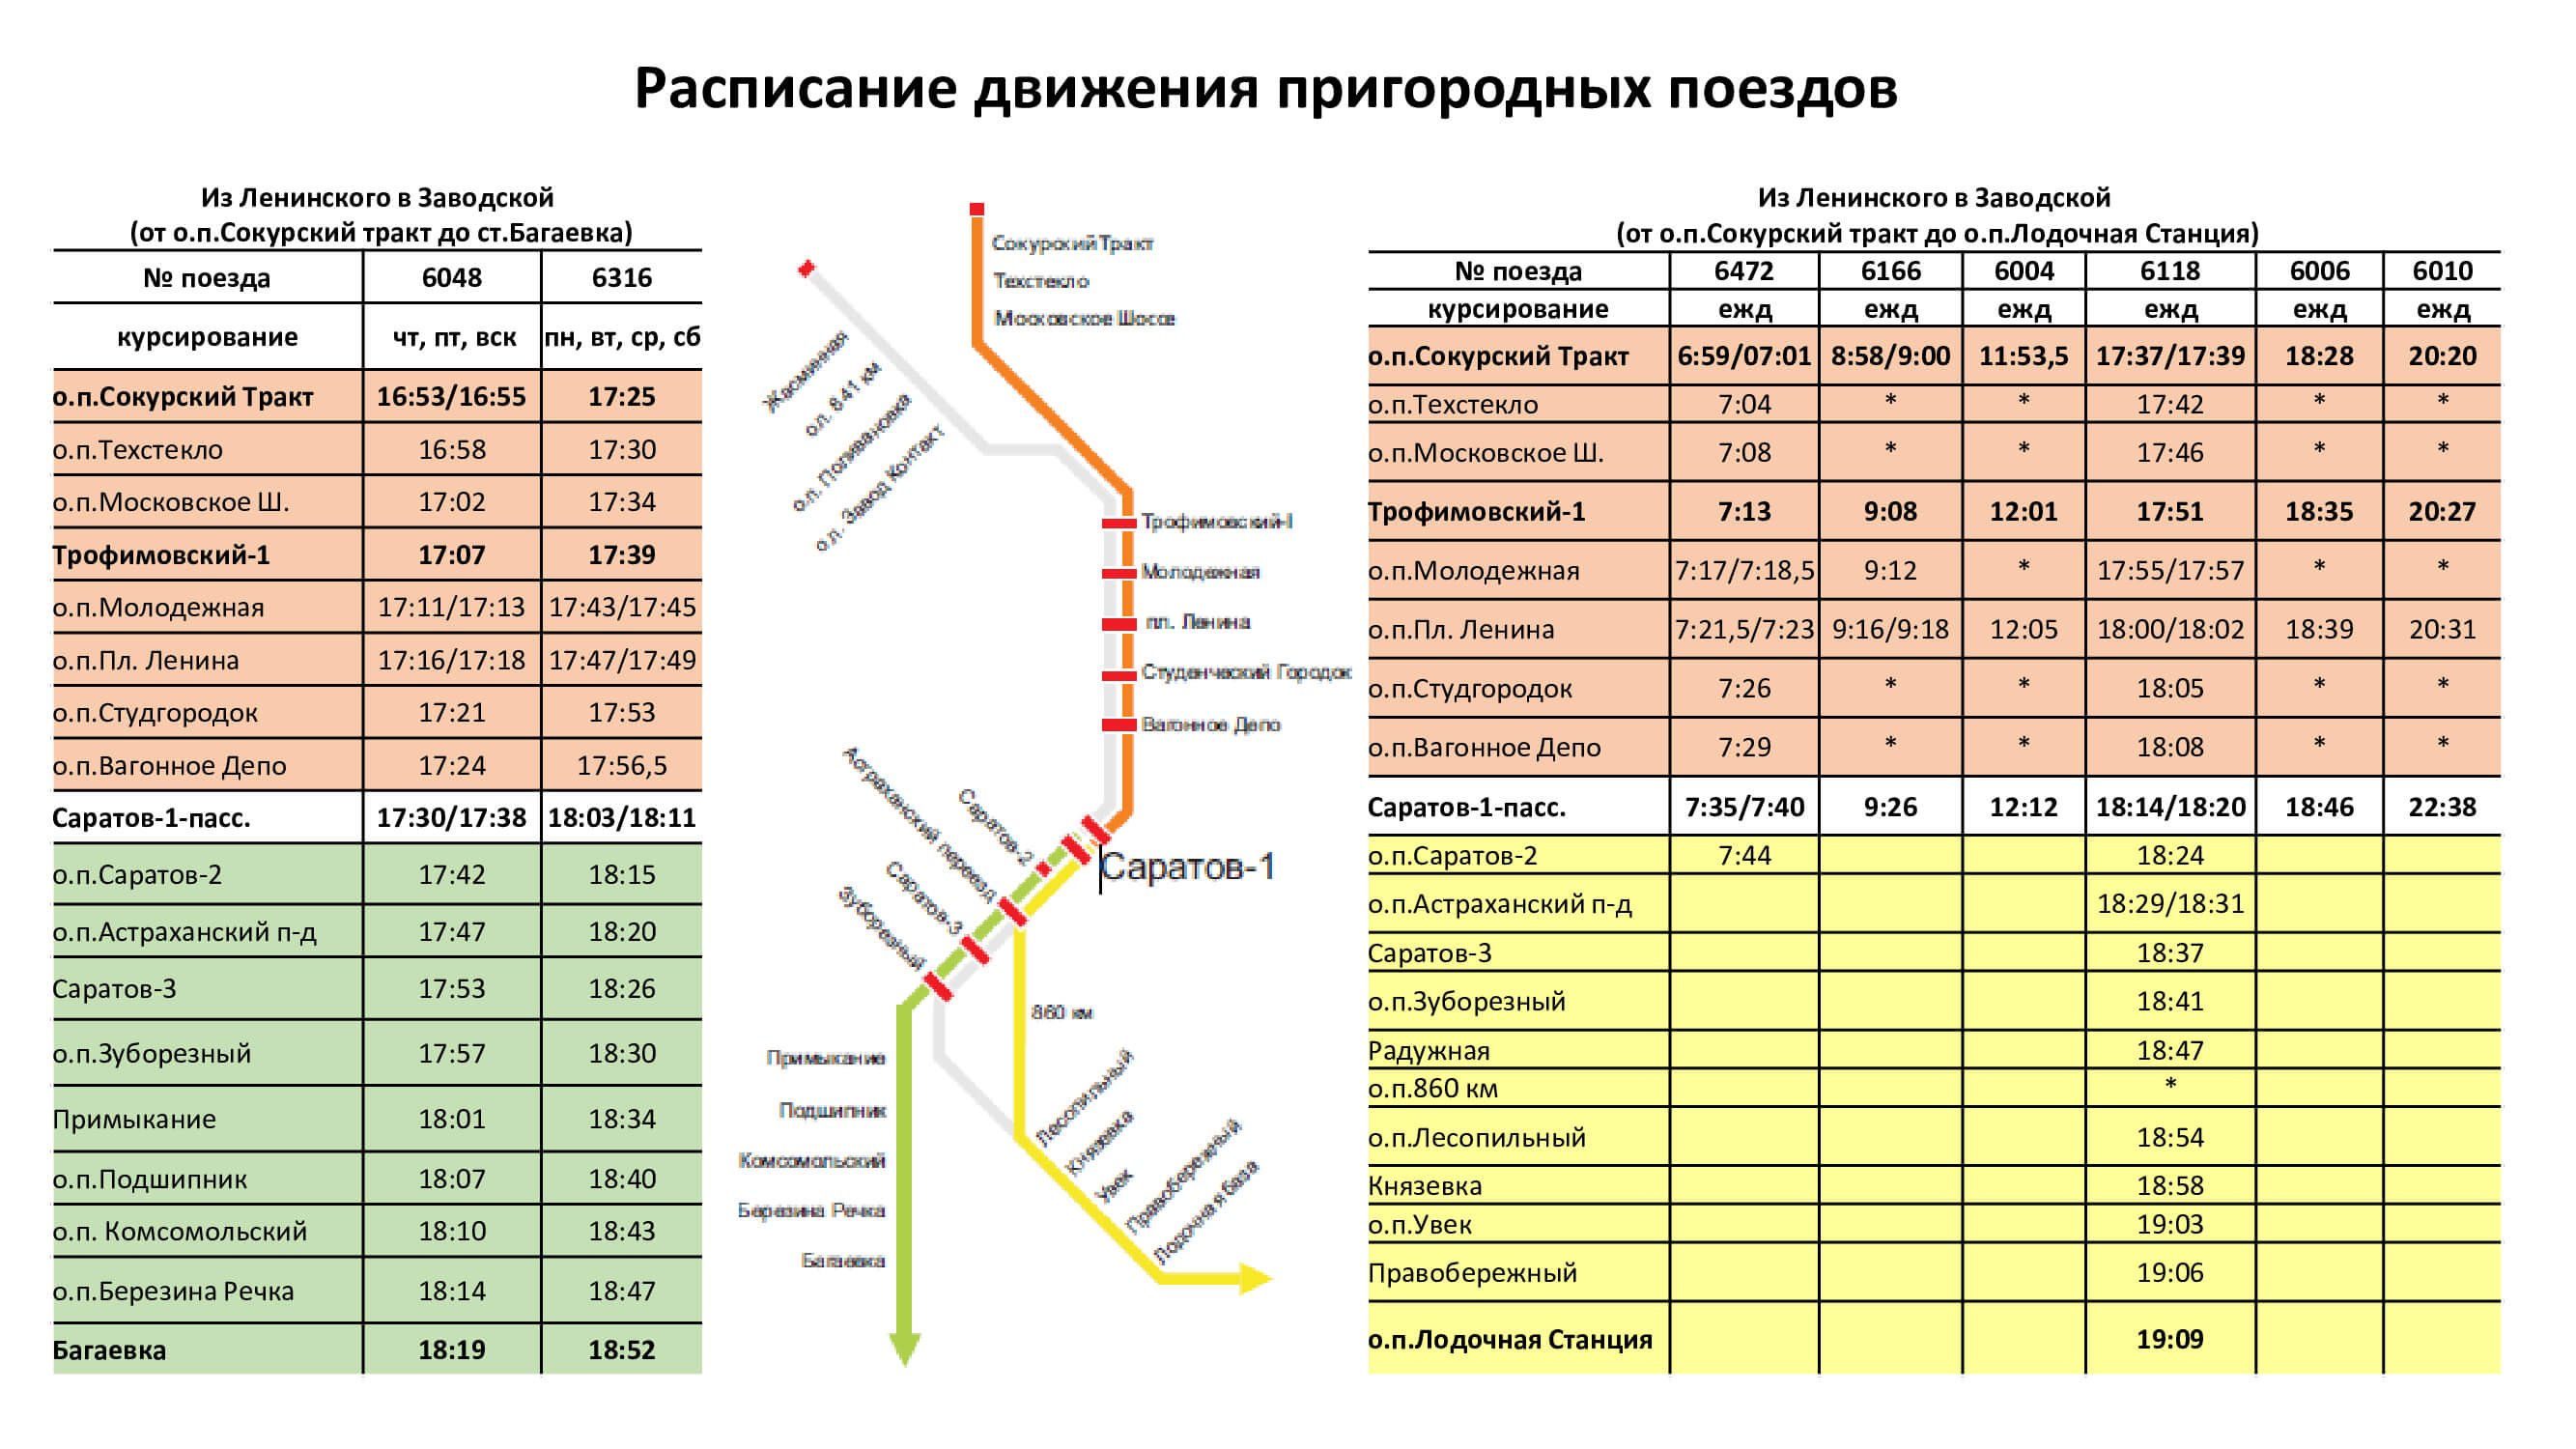 gorodskaja cherta 2. - Расписание движения пригородных поездов в черте города